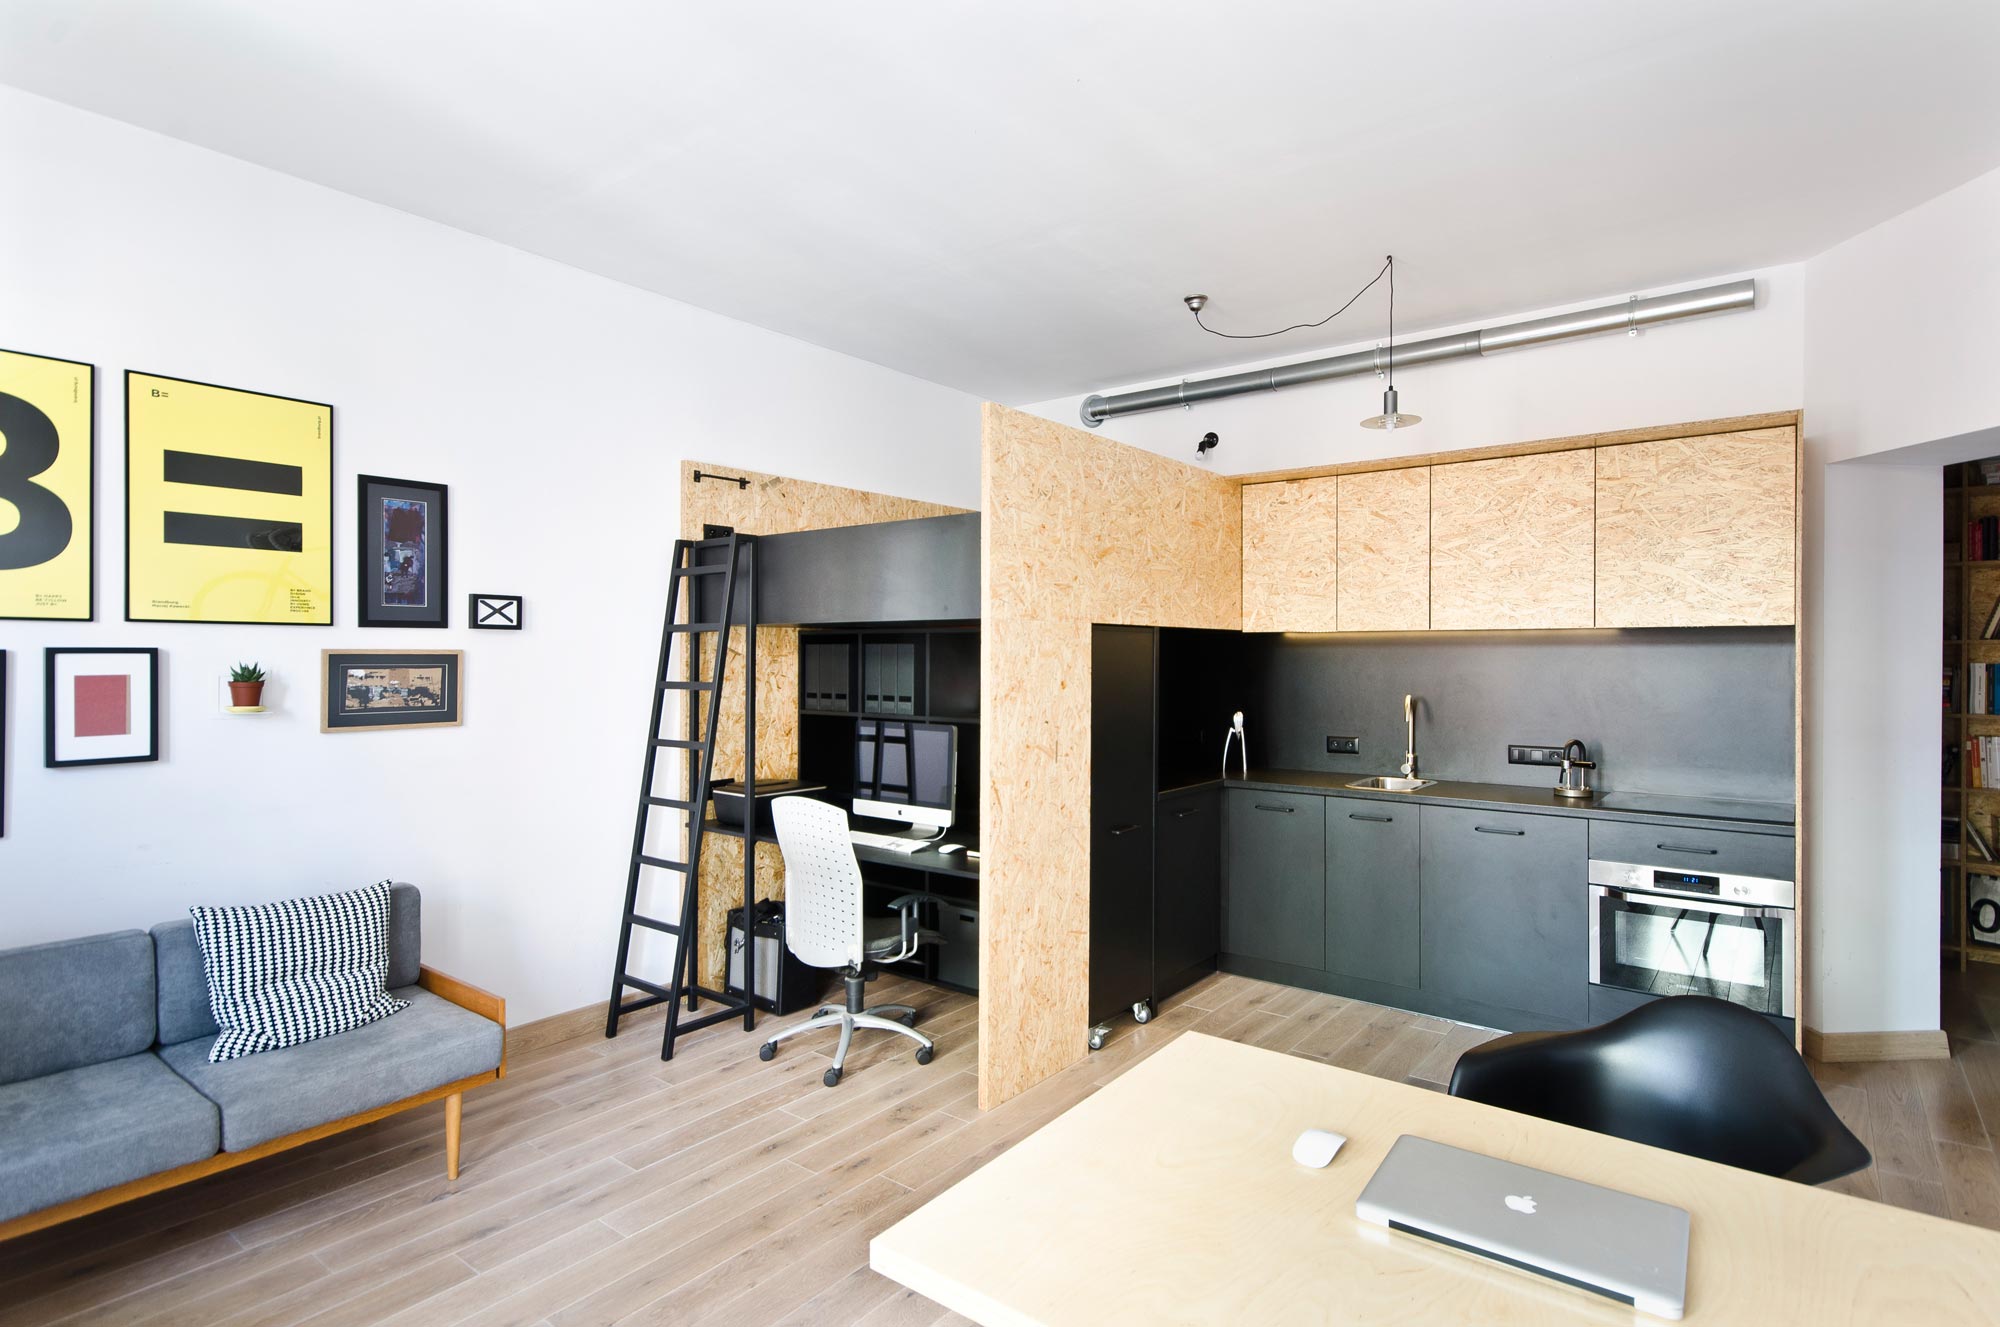 Brandburg studio i mieszkanie urządzone na 37 m2 